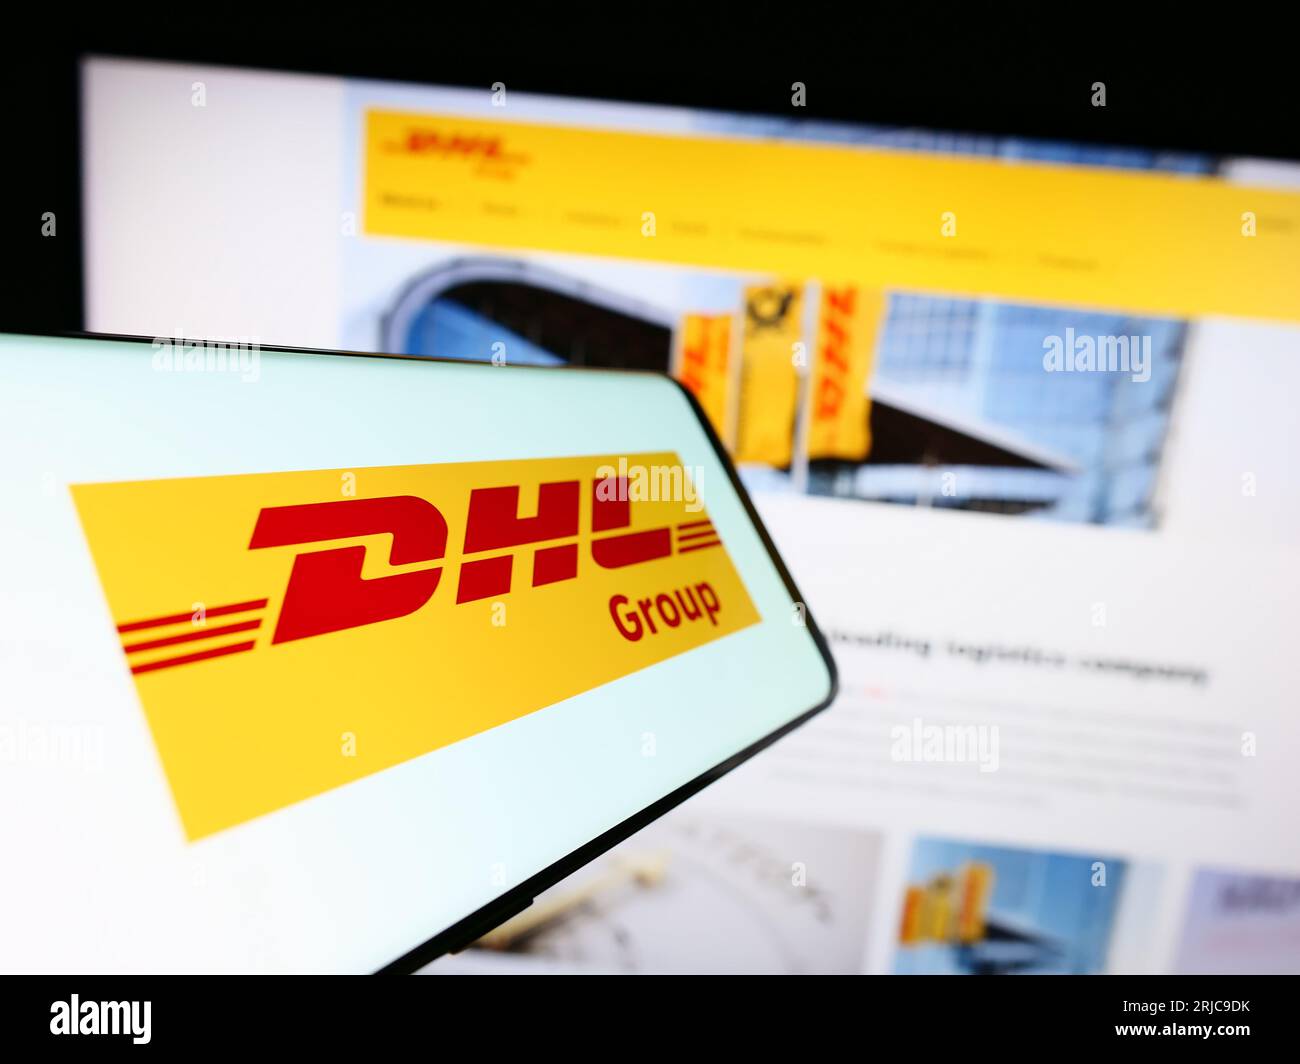 Smartphone avec logo de la société de logistique Deutsche Post AG (DHL Group) sur l'écran devant le site Web. Concentrez-vous sur le centre gauche de l'écran du téléphone. Banque D'Images